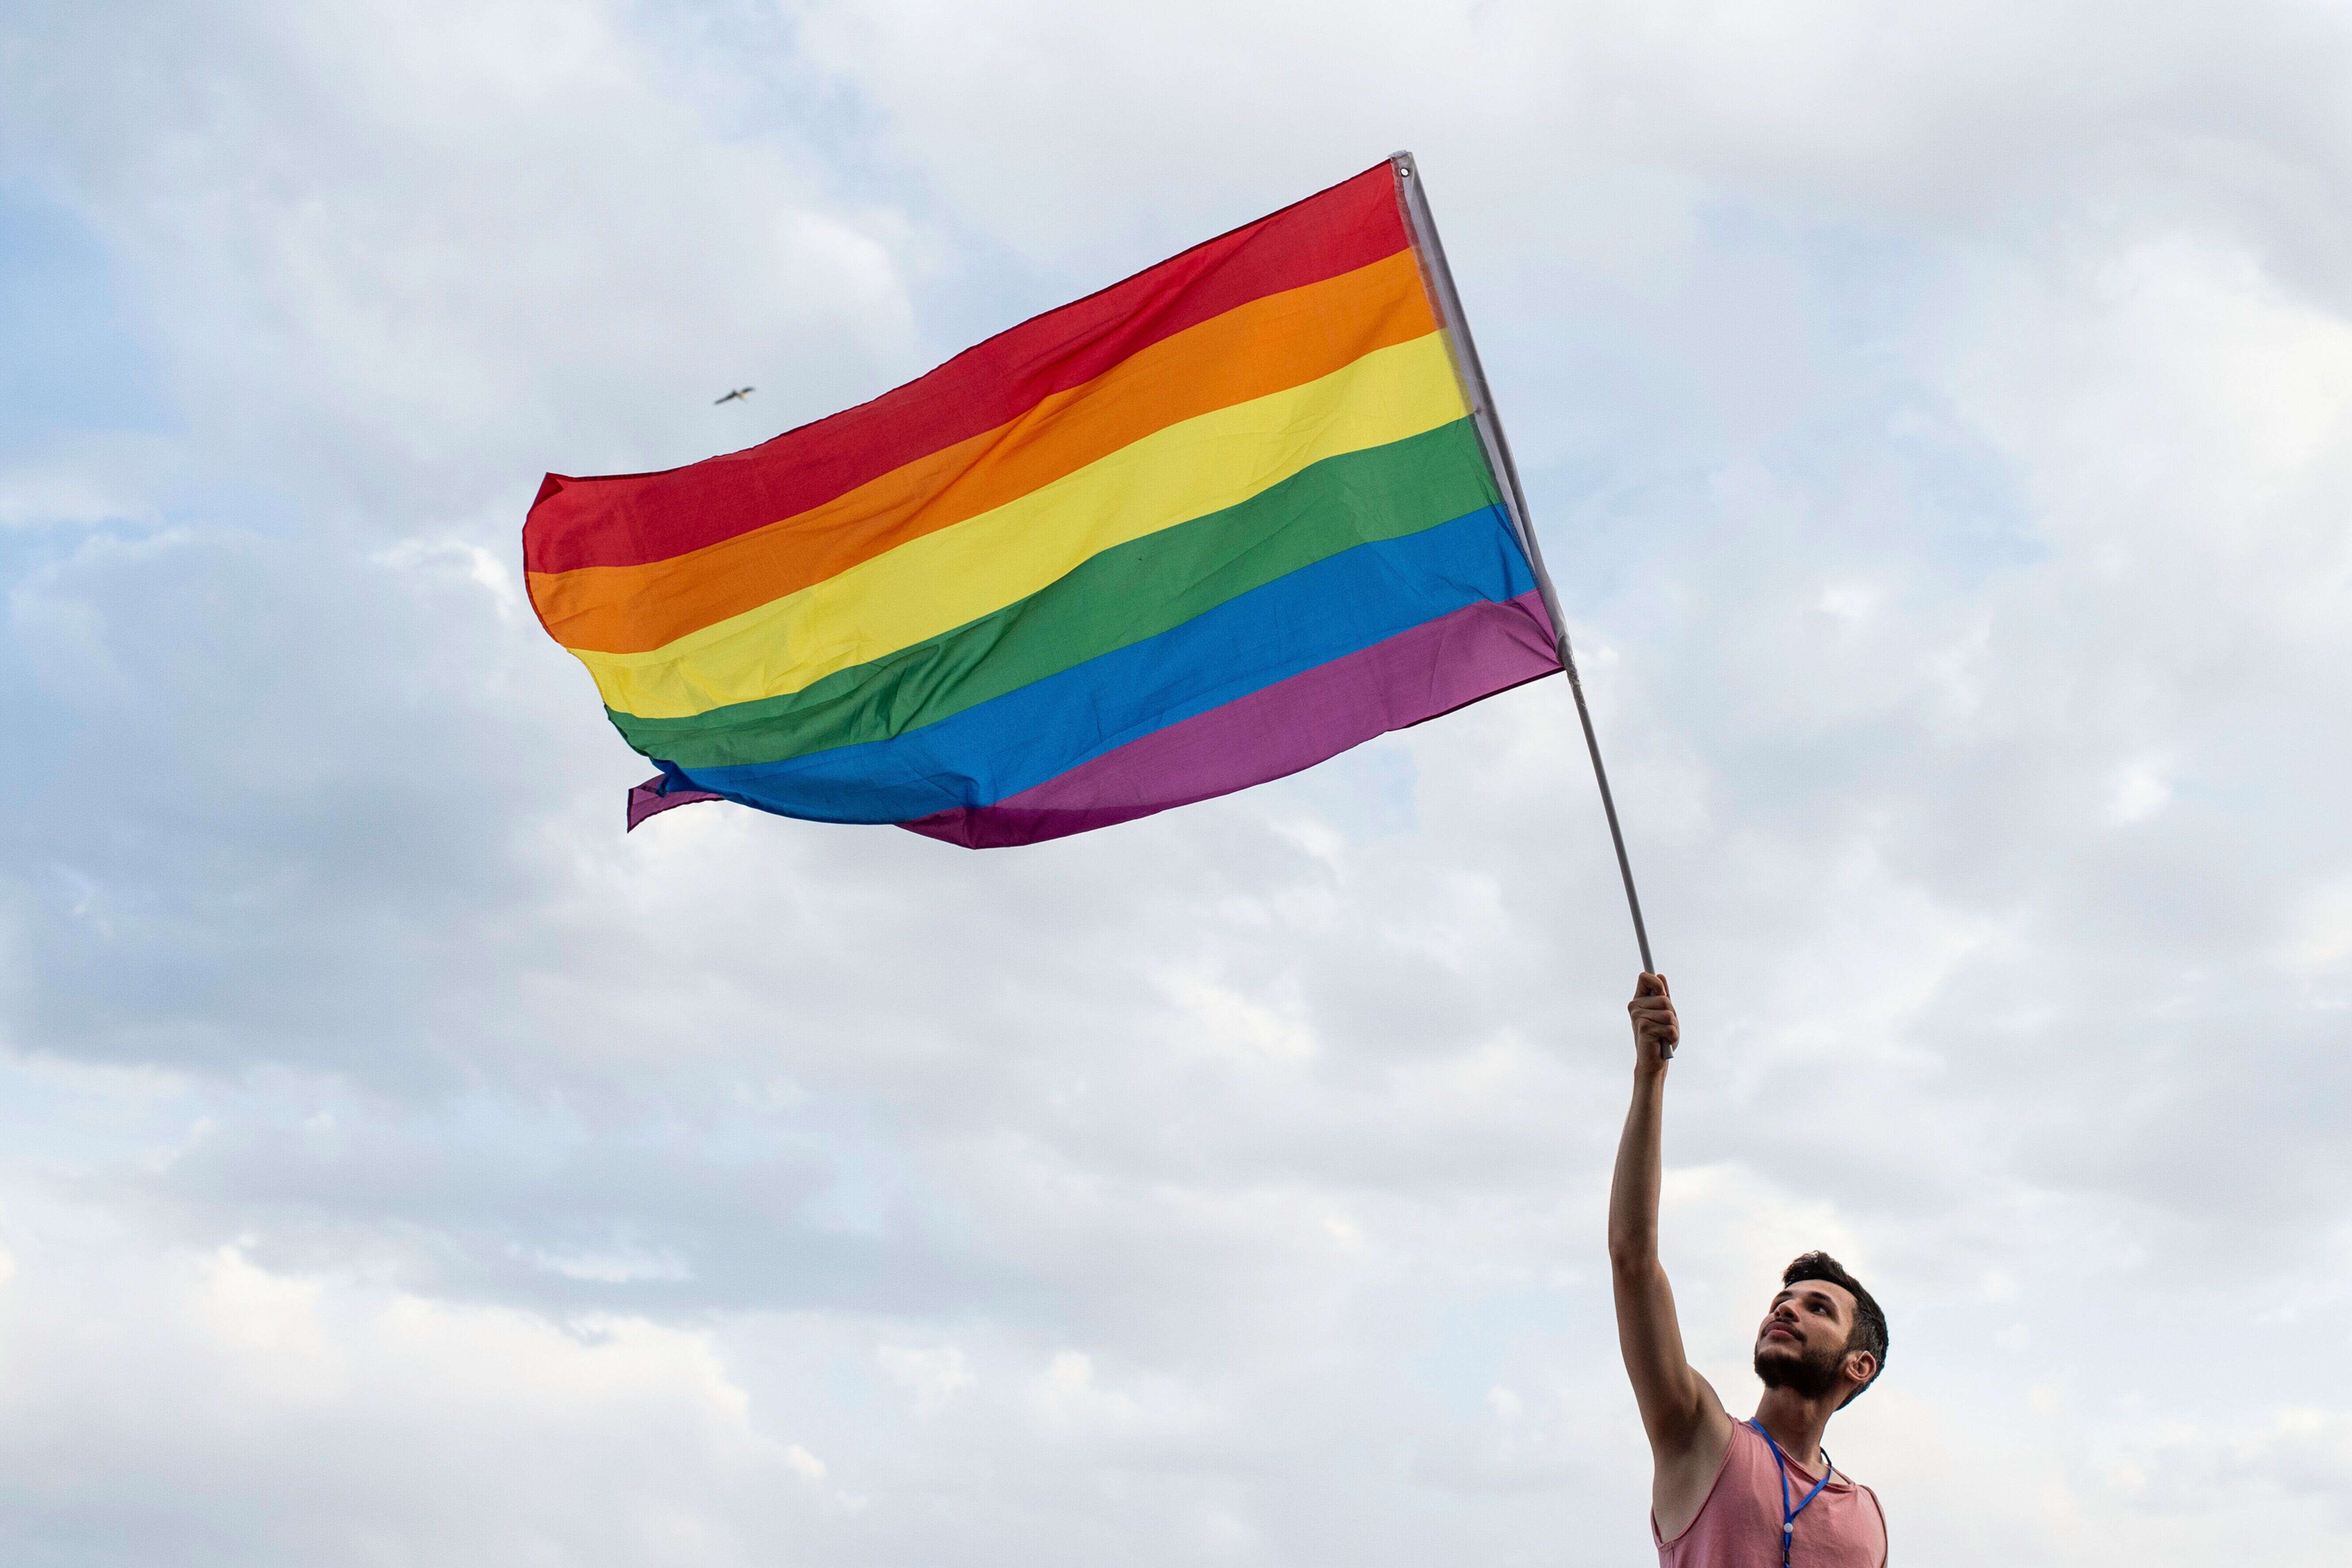 La communauté LGBT est de plus en plus acceptée mais de nombreux clichés persistent.